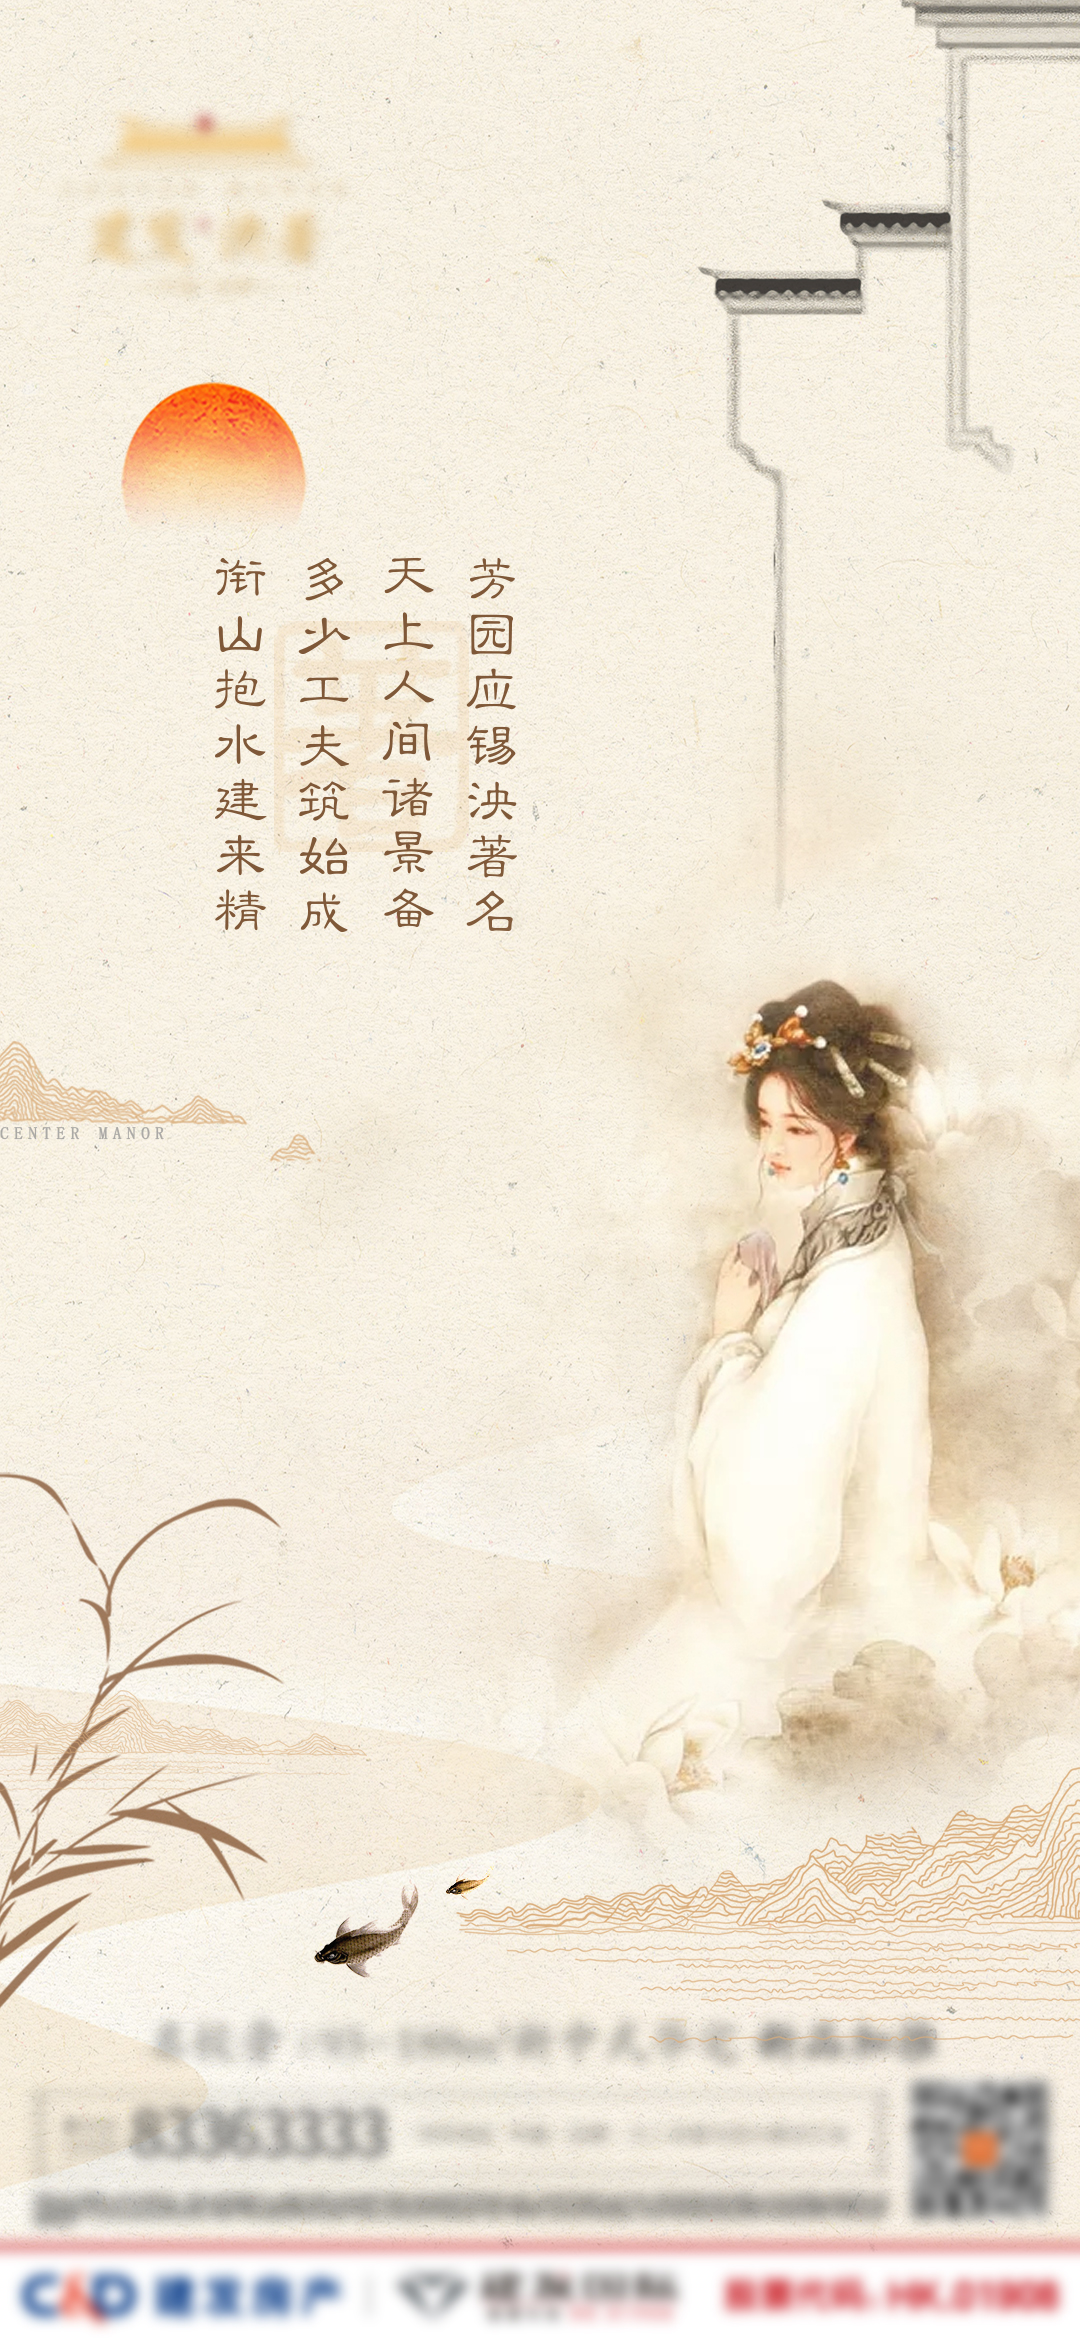 中式古风红楼梦古诗海报psd广告设计素材海报模板免费下载